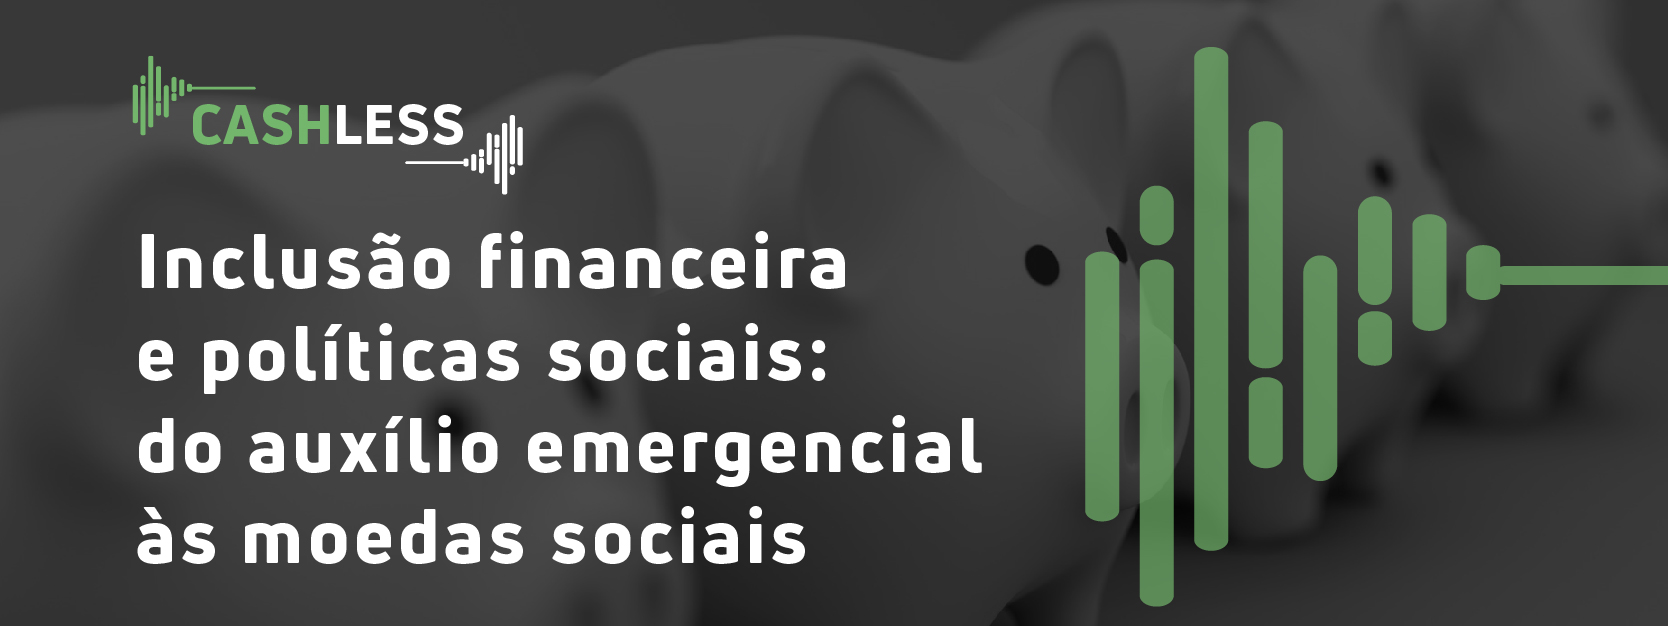 Inclusão financeira e políticas sociais: do auxílio emergencial às moedas sociais